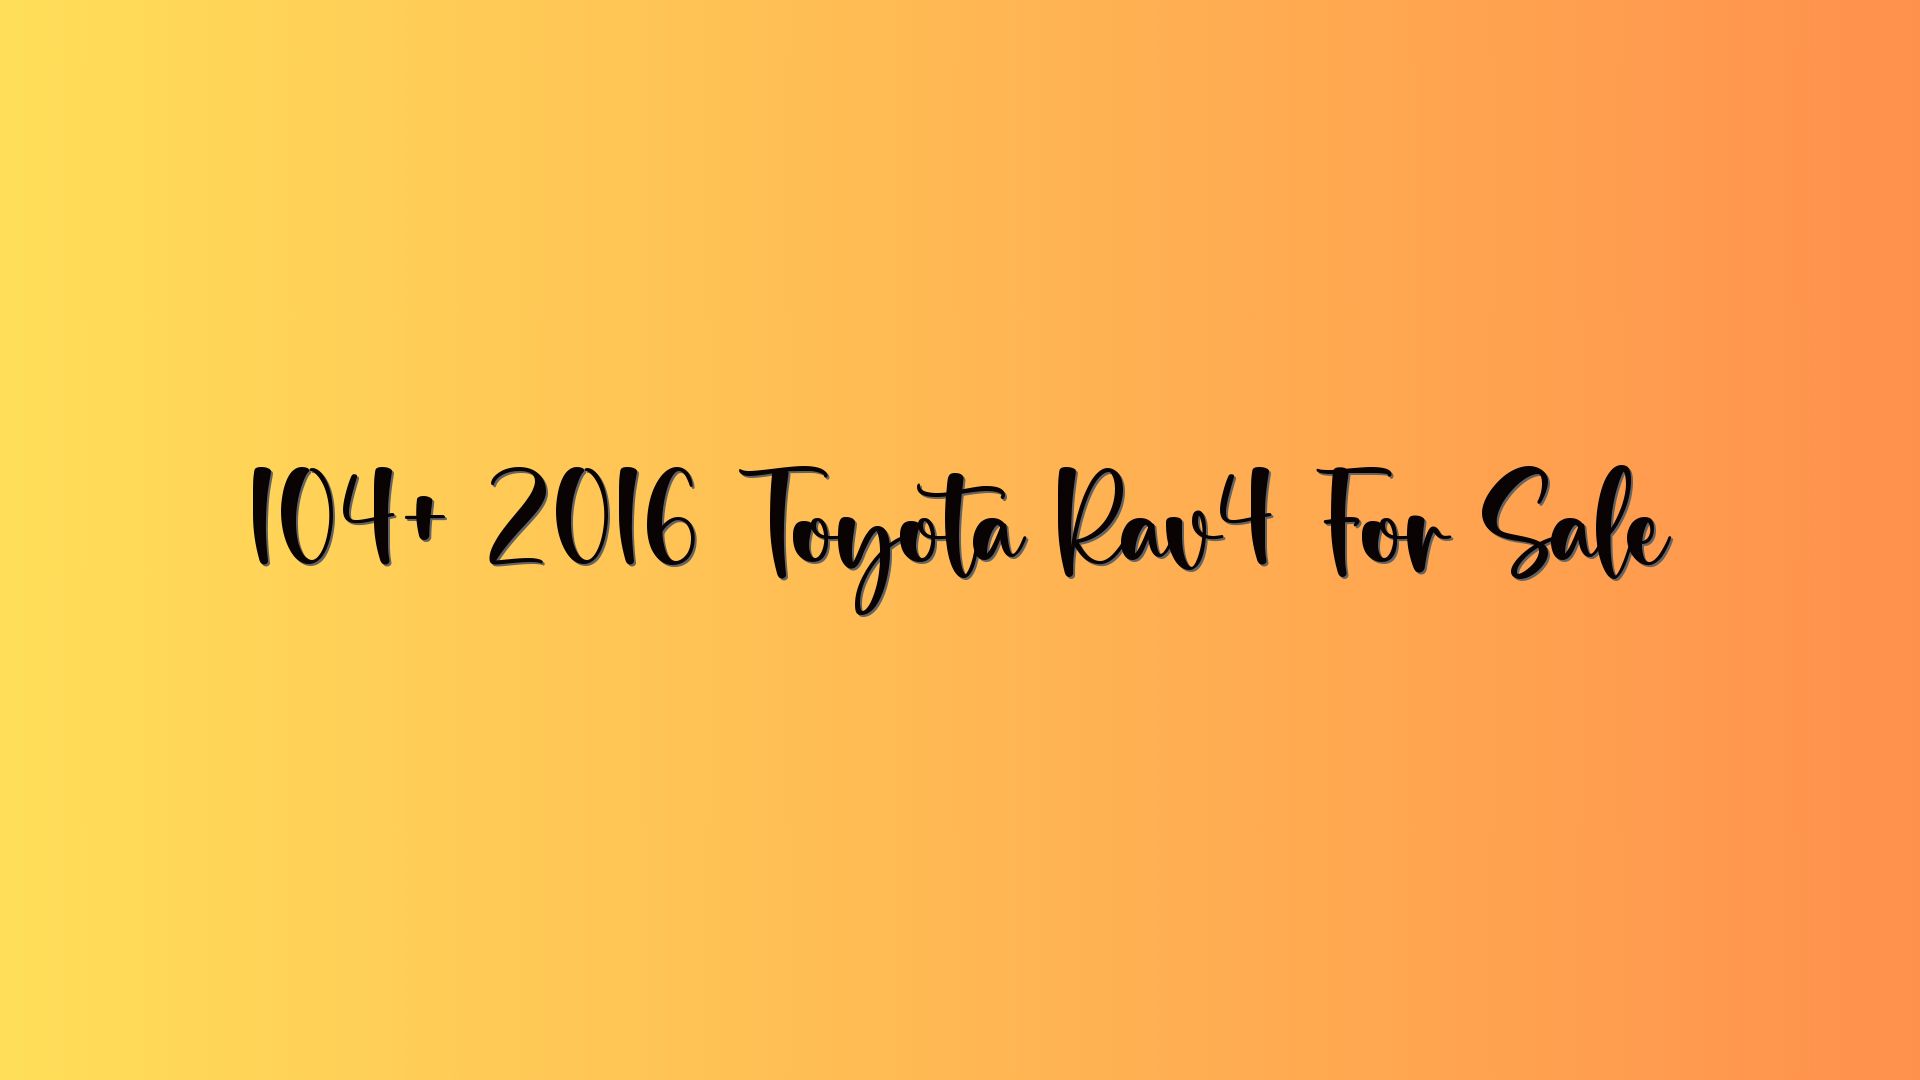 104+ 2016 Toyota Rav4 For Sale